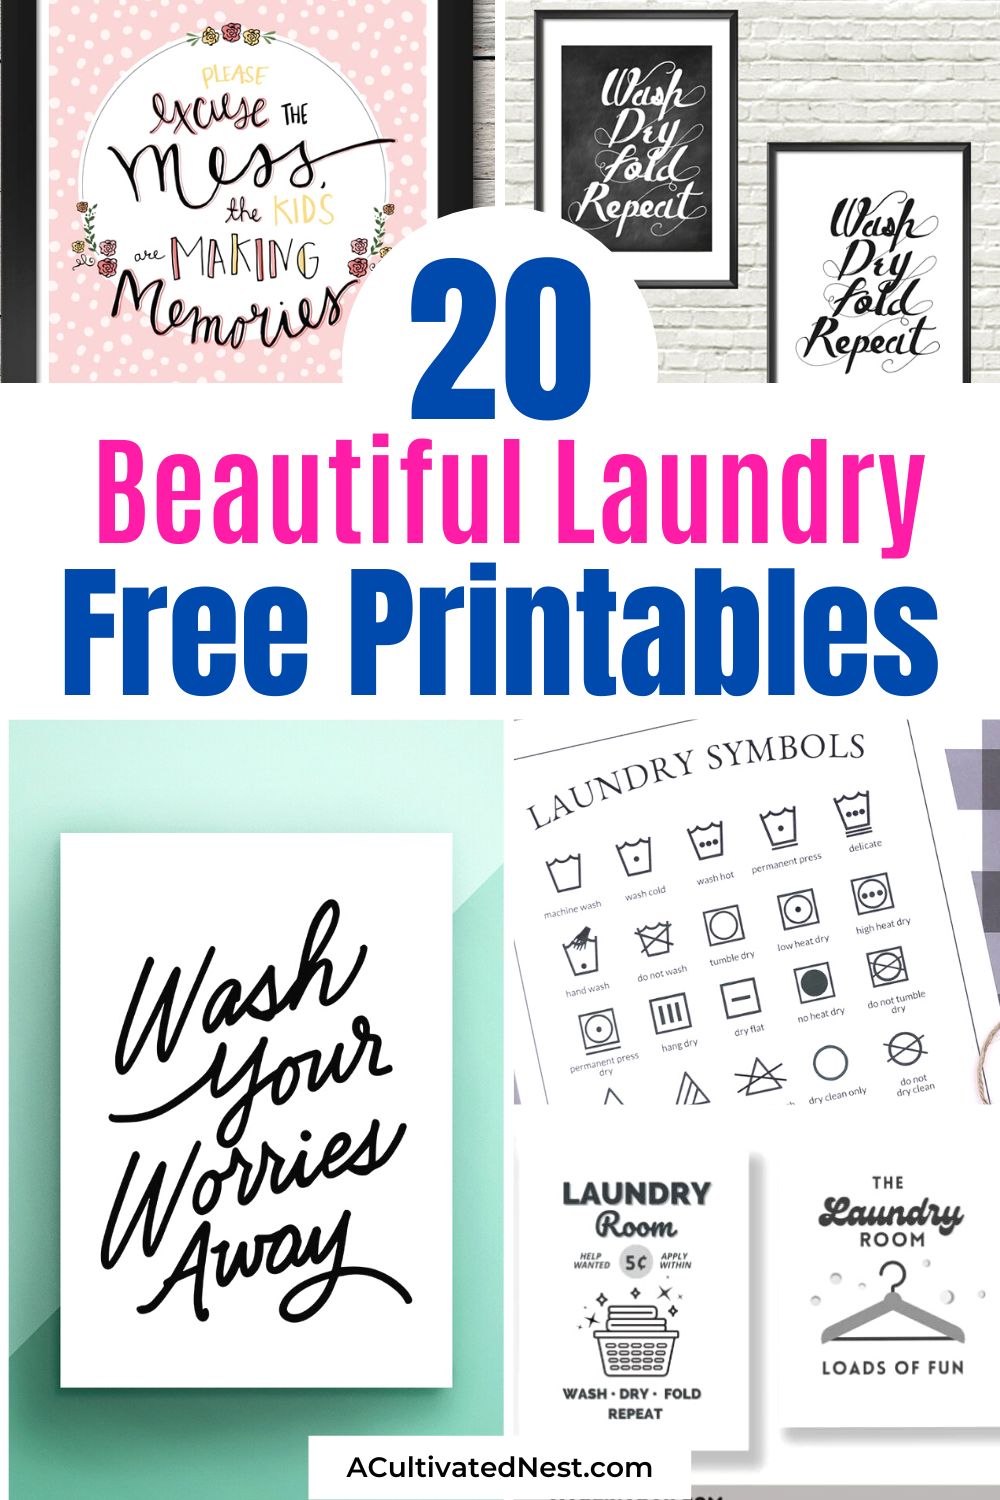 20 jolis imprimables gratuits pour la buanderie - Agrémentez votre buanderie avec un budget limité avec ces magnifiques imprimables gratuits pour la buanderie.  Vous n'aimez peut-être pas tout le linge, mais ceux-ci pourraient le rendre meilleur!  |  #freePrintables #printable #laundryRoom #laundryPrintables #ACultivatedNest